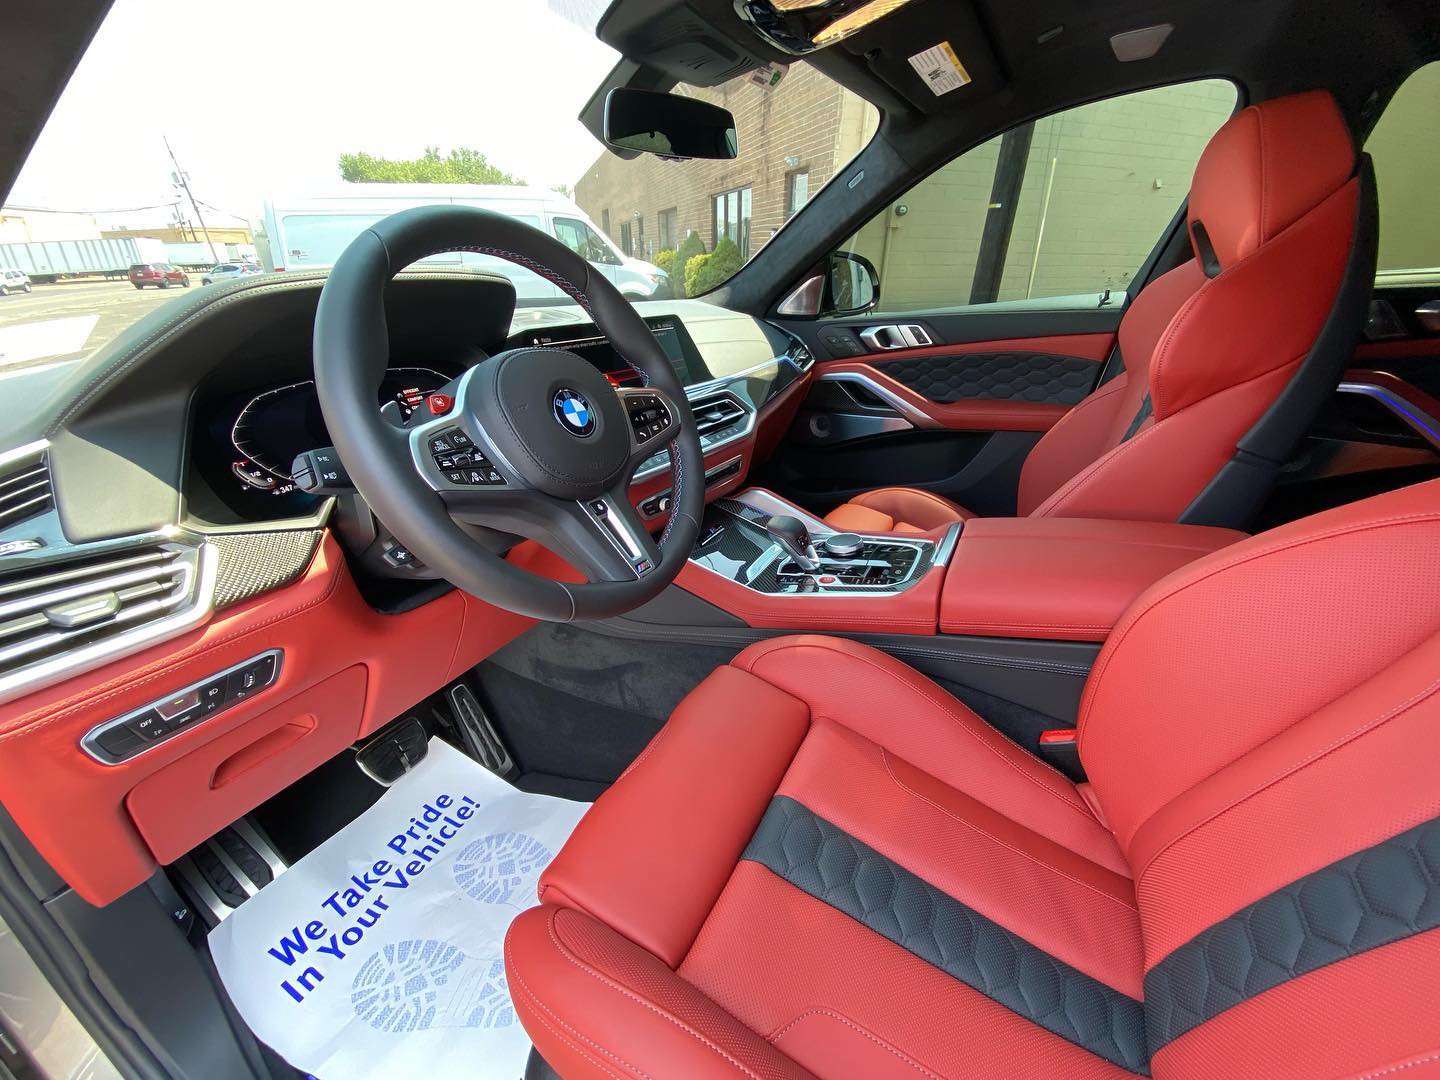 AODetail on luxury BMW interior